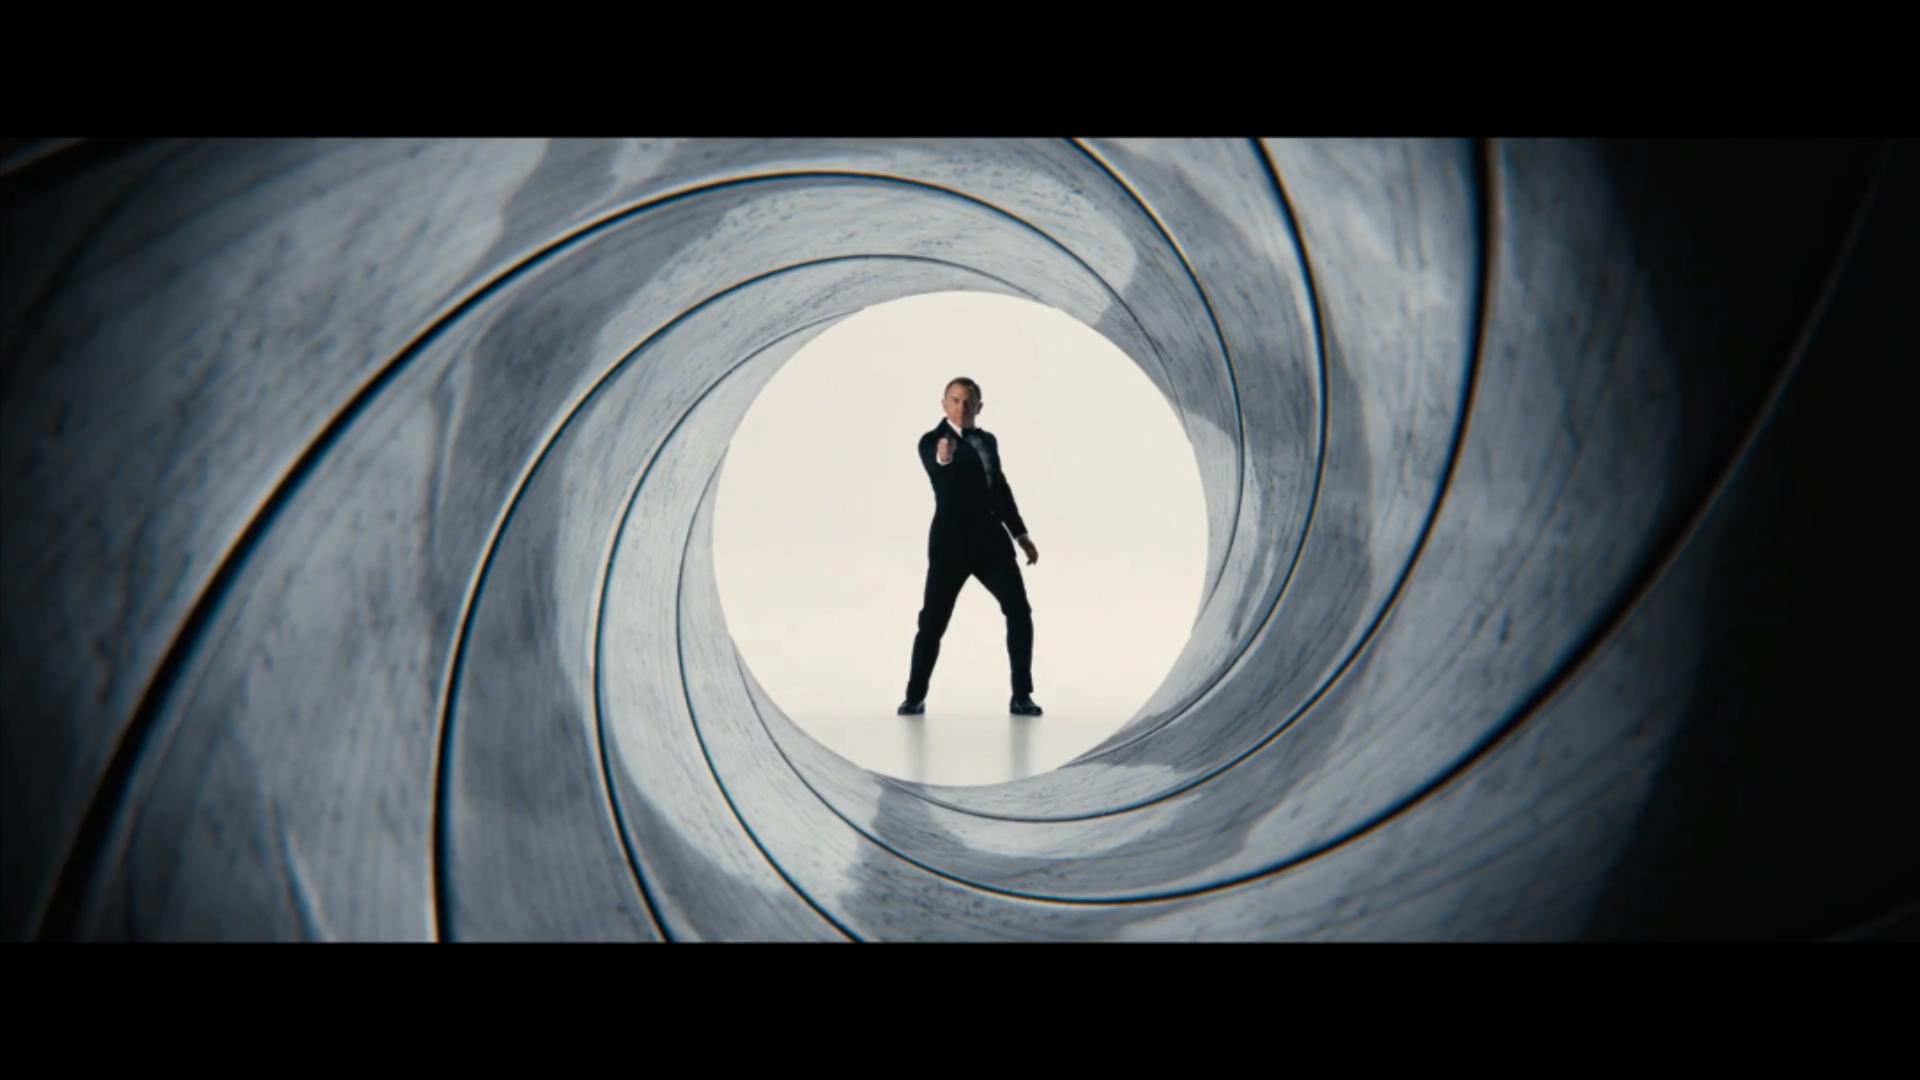 《无暇赴死》中丹尼尔·克雷格在片头枪管漩涡镜头中亮相